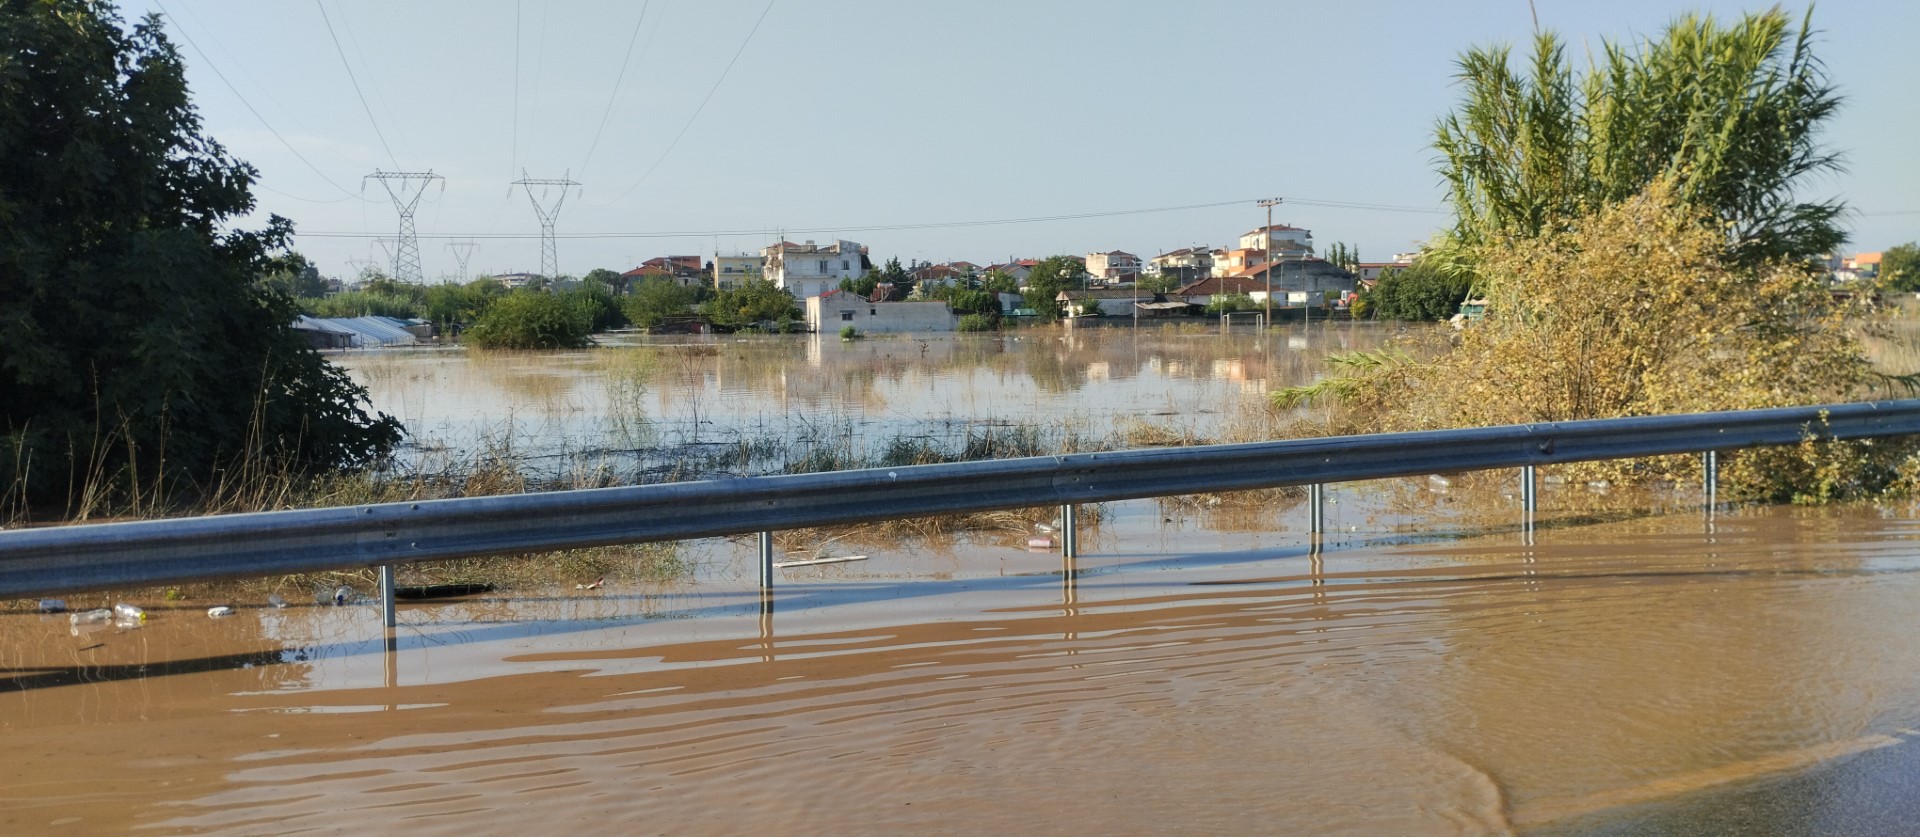 Δήμος Λαρισαίων: Στοιχεία για τις απαλλαγές δημοτικών τελών στους πλημμυροπαθείς ζητά η μείζονα αντιπολίτευση